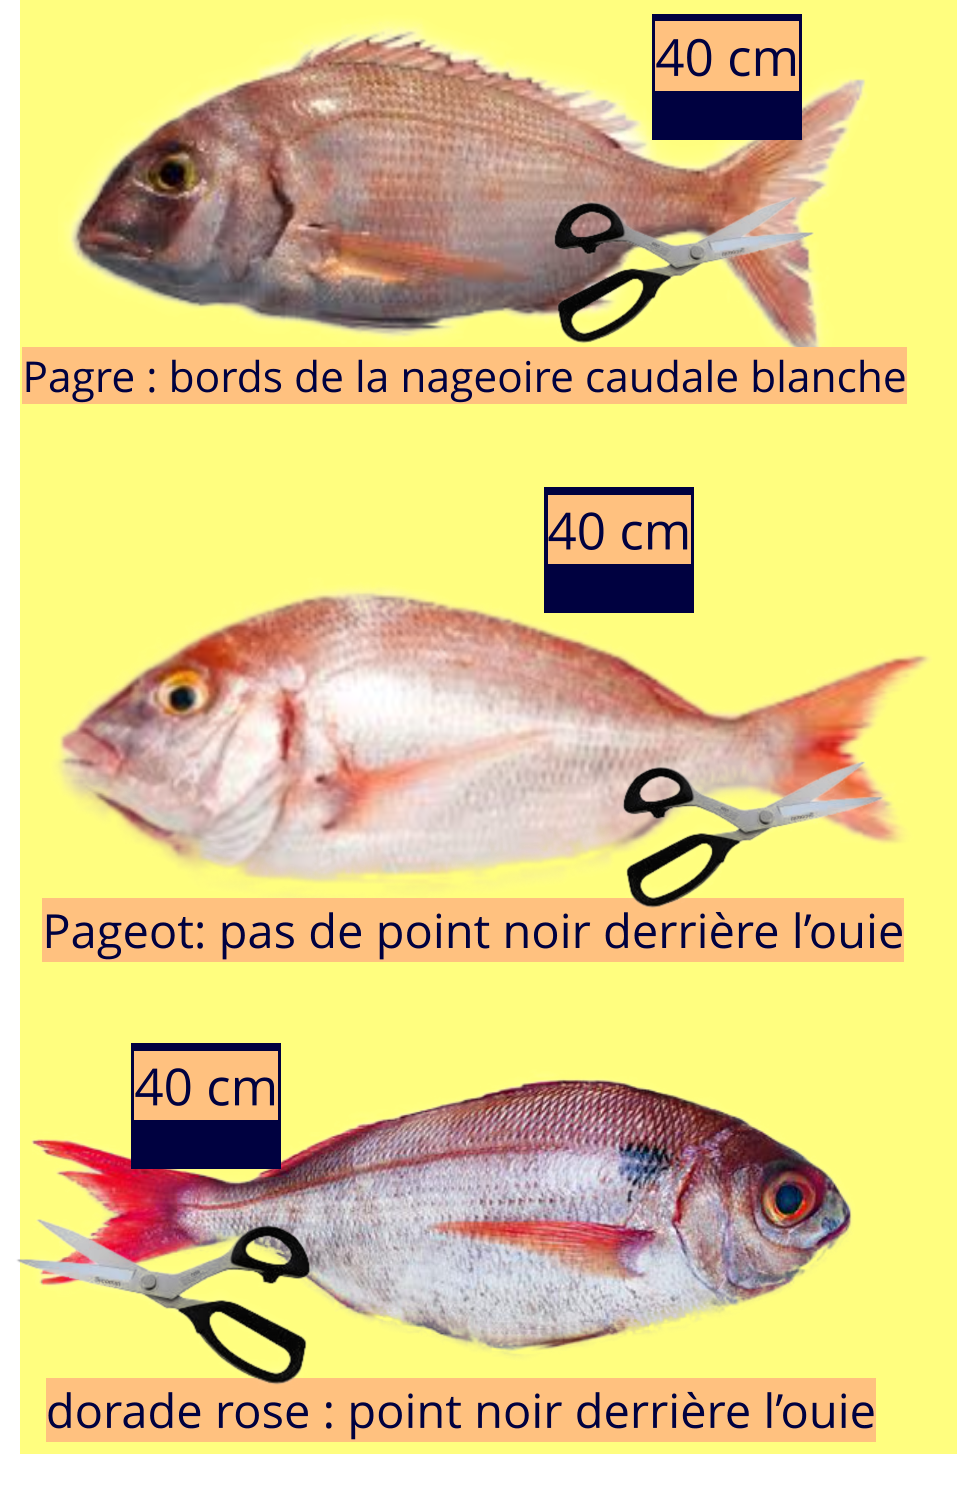 40 cm Pagre : bords de la nageoire caudale blanche Pageot: pas de point noir derrière l’ouie dorade rose : point noir derrière l’ouie 40 cm 40 cm